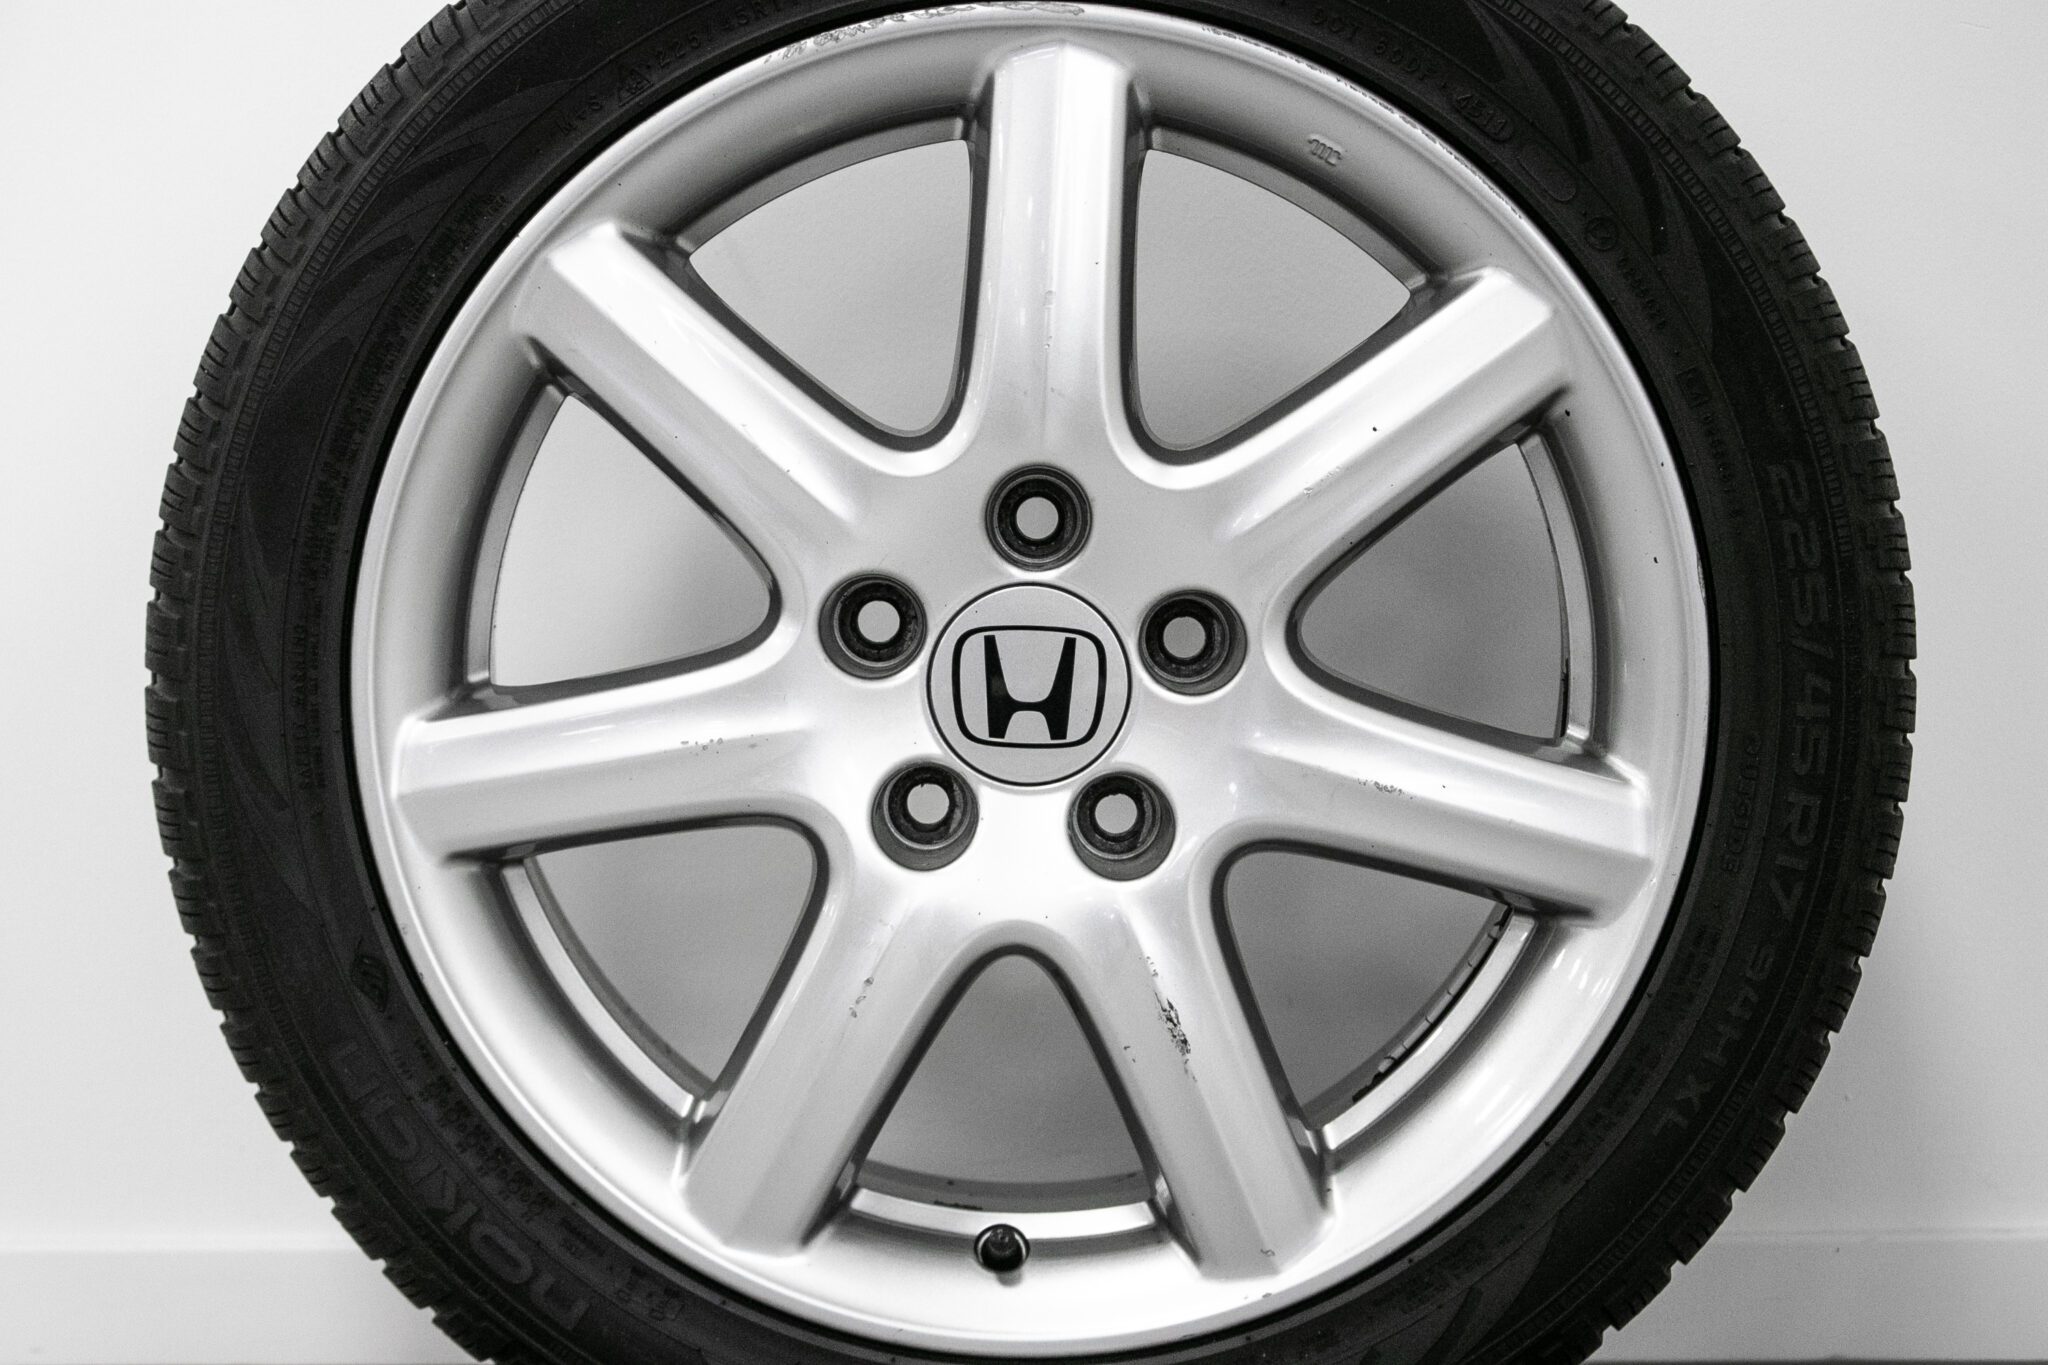 17" Winterwielen voor de Honda Civic ('12-'17)
€399,-
Gebruikt. Profieldiepte: 6.2mm - 6.5mm